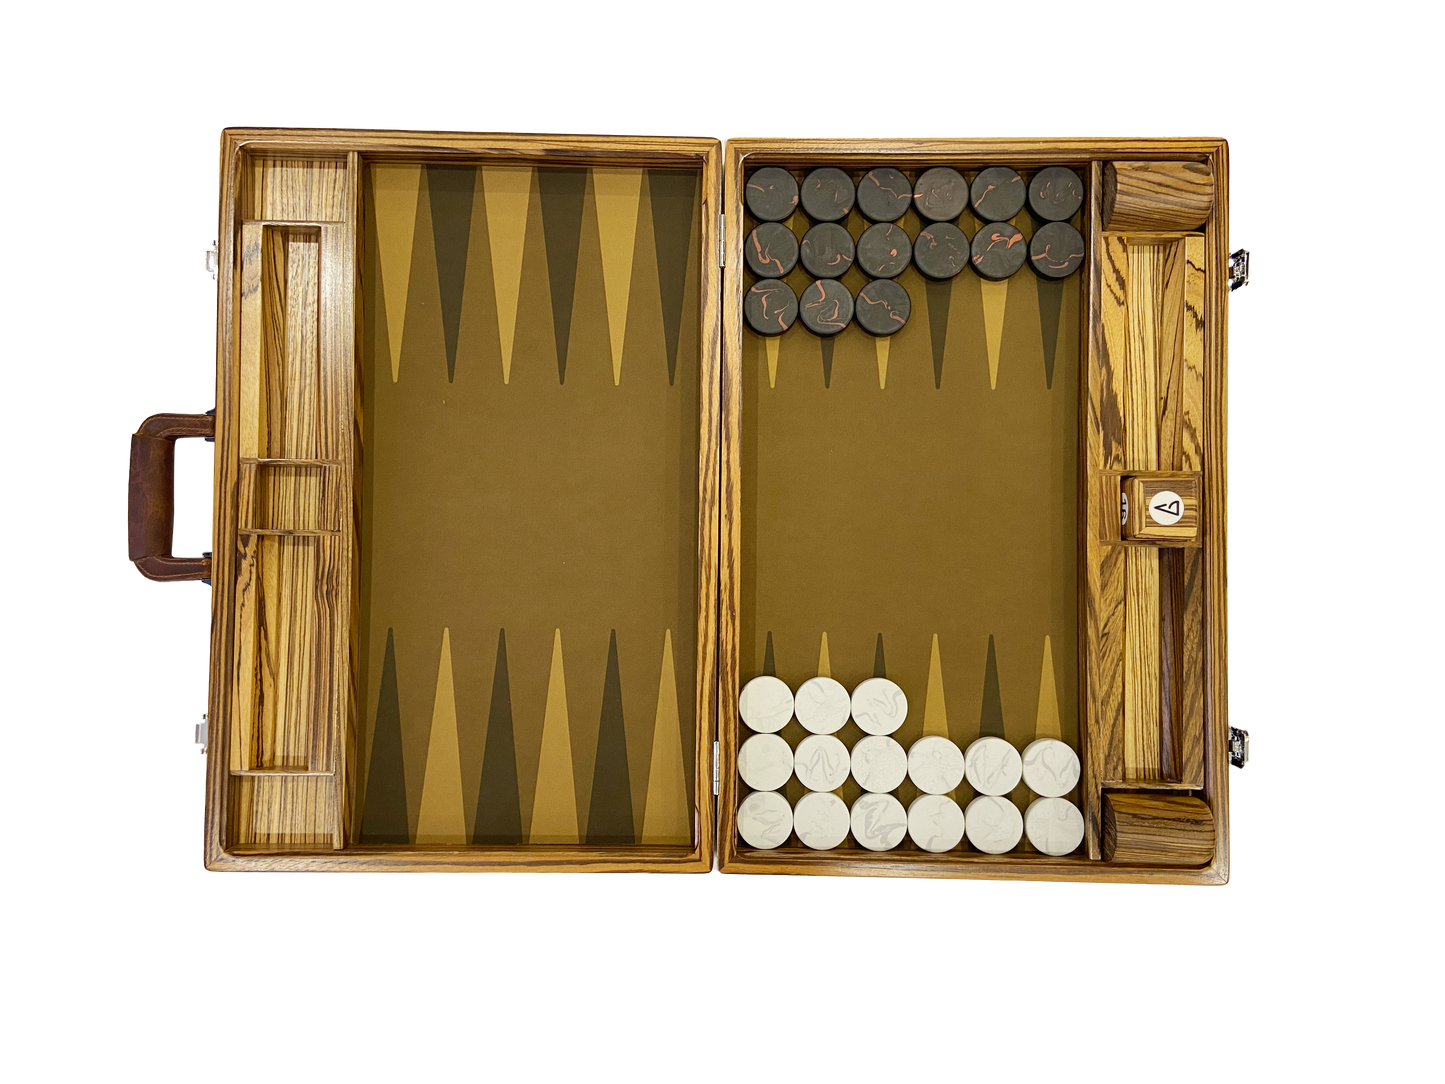 Tavola primordiale, set di backgammon di lusso, edizione limitata